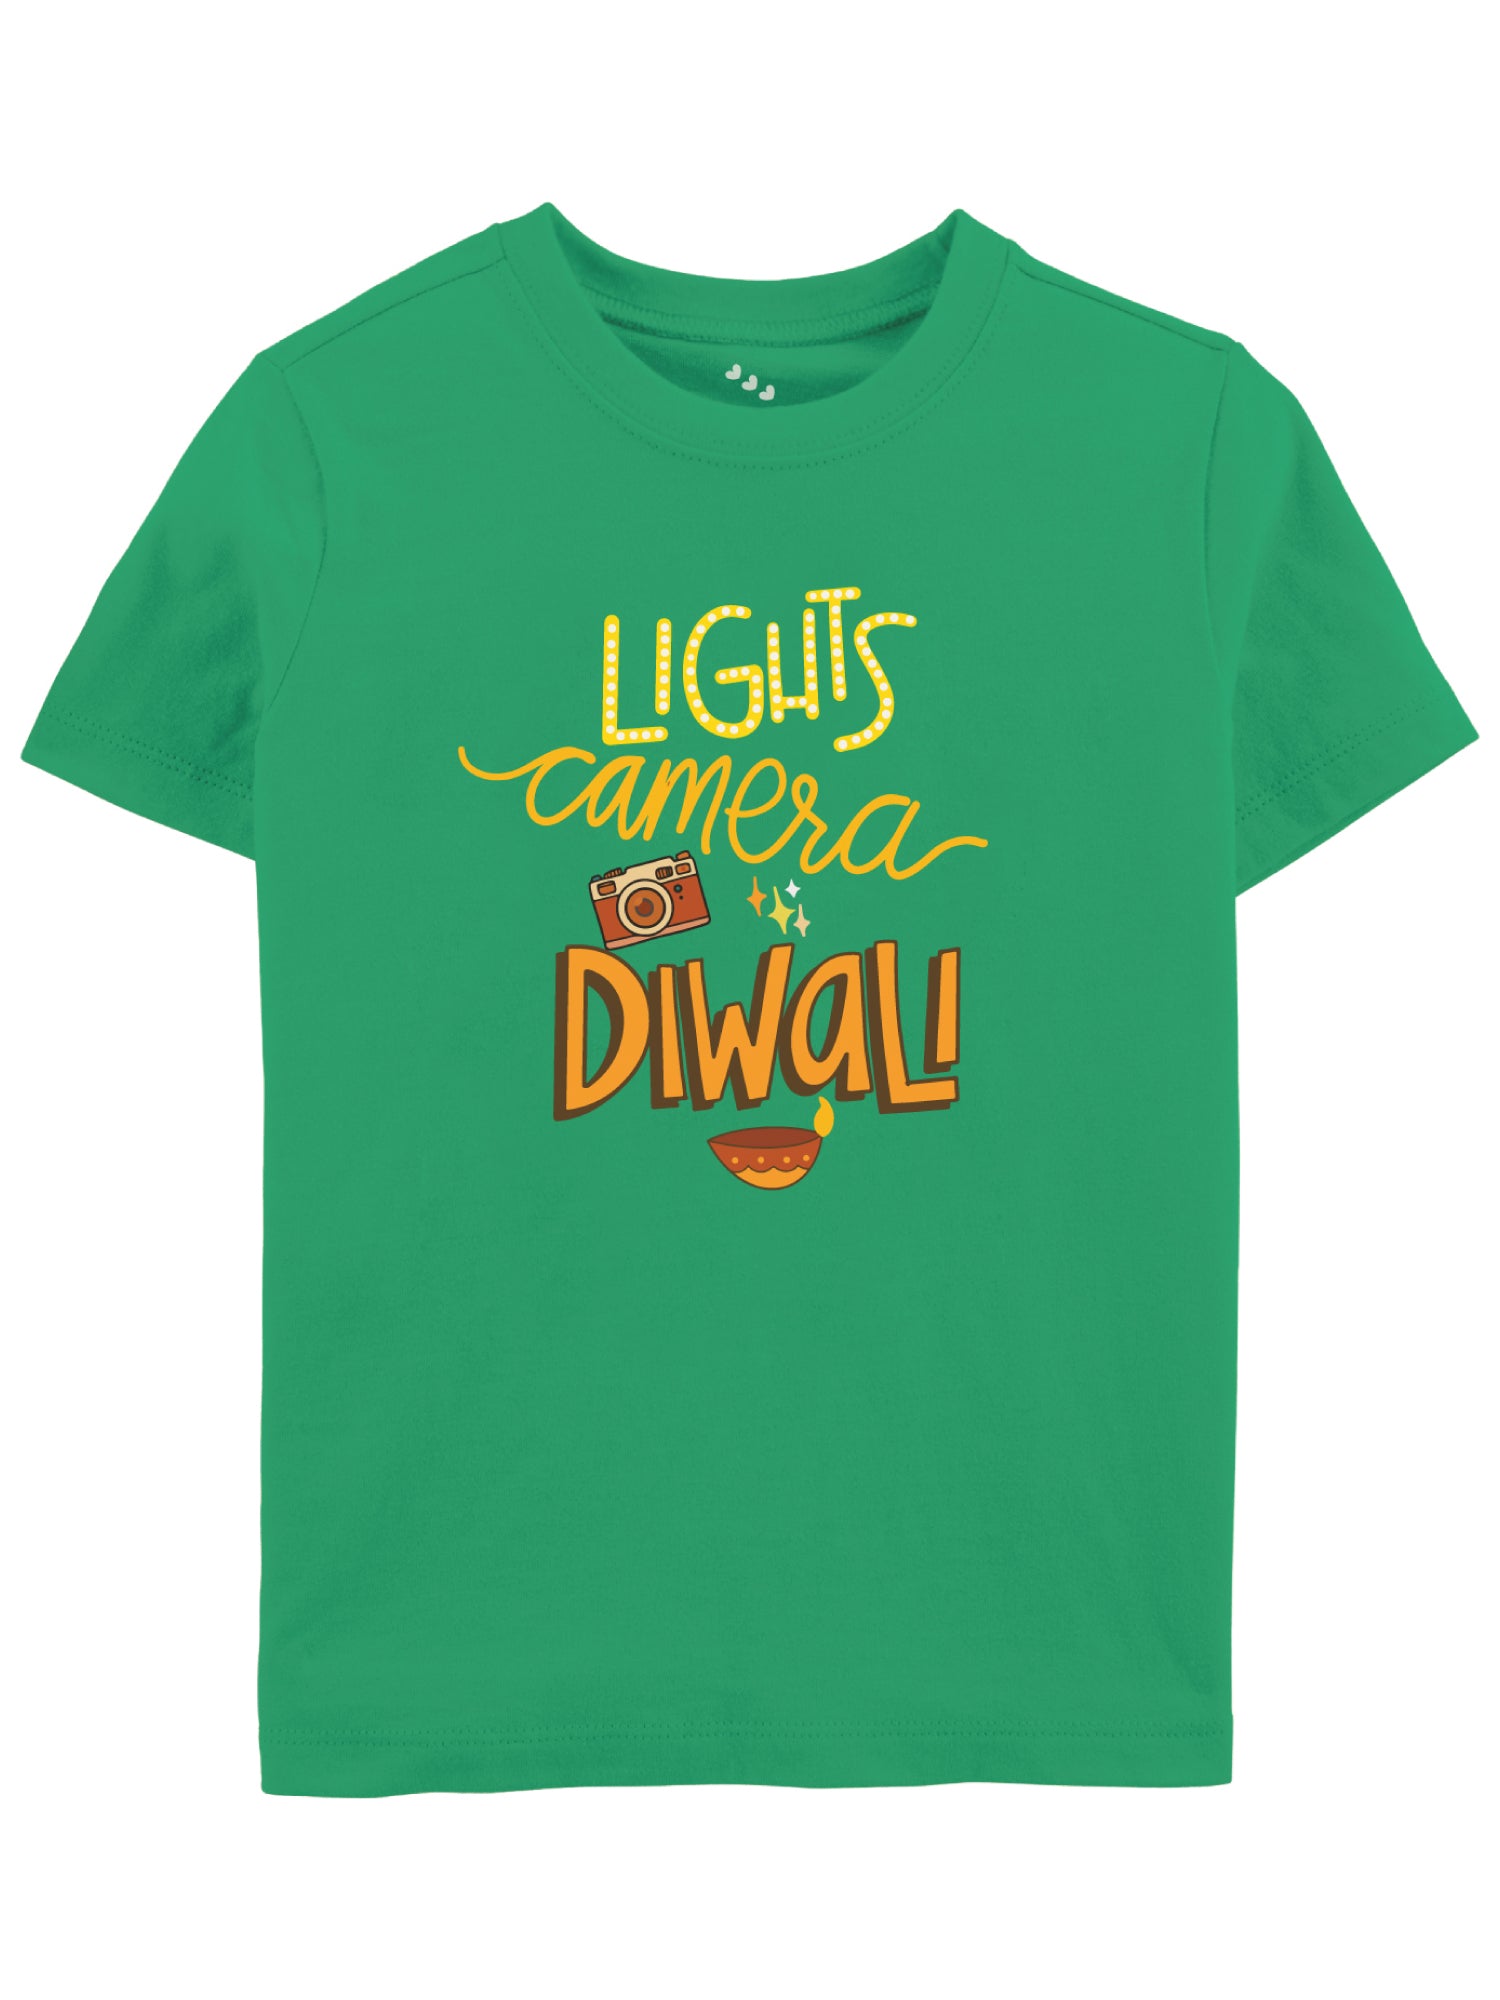 Lights Camera Diwali - Tee